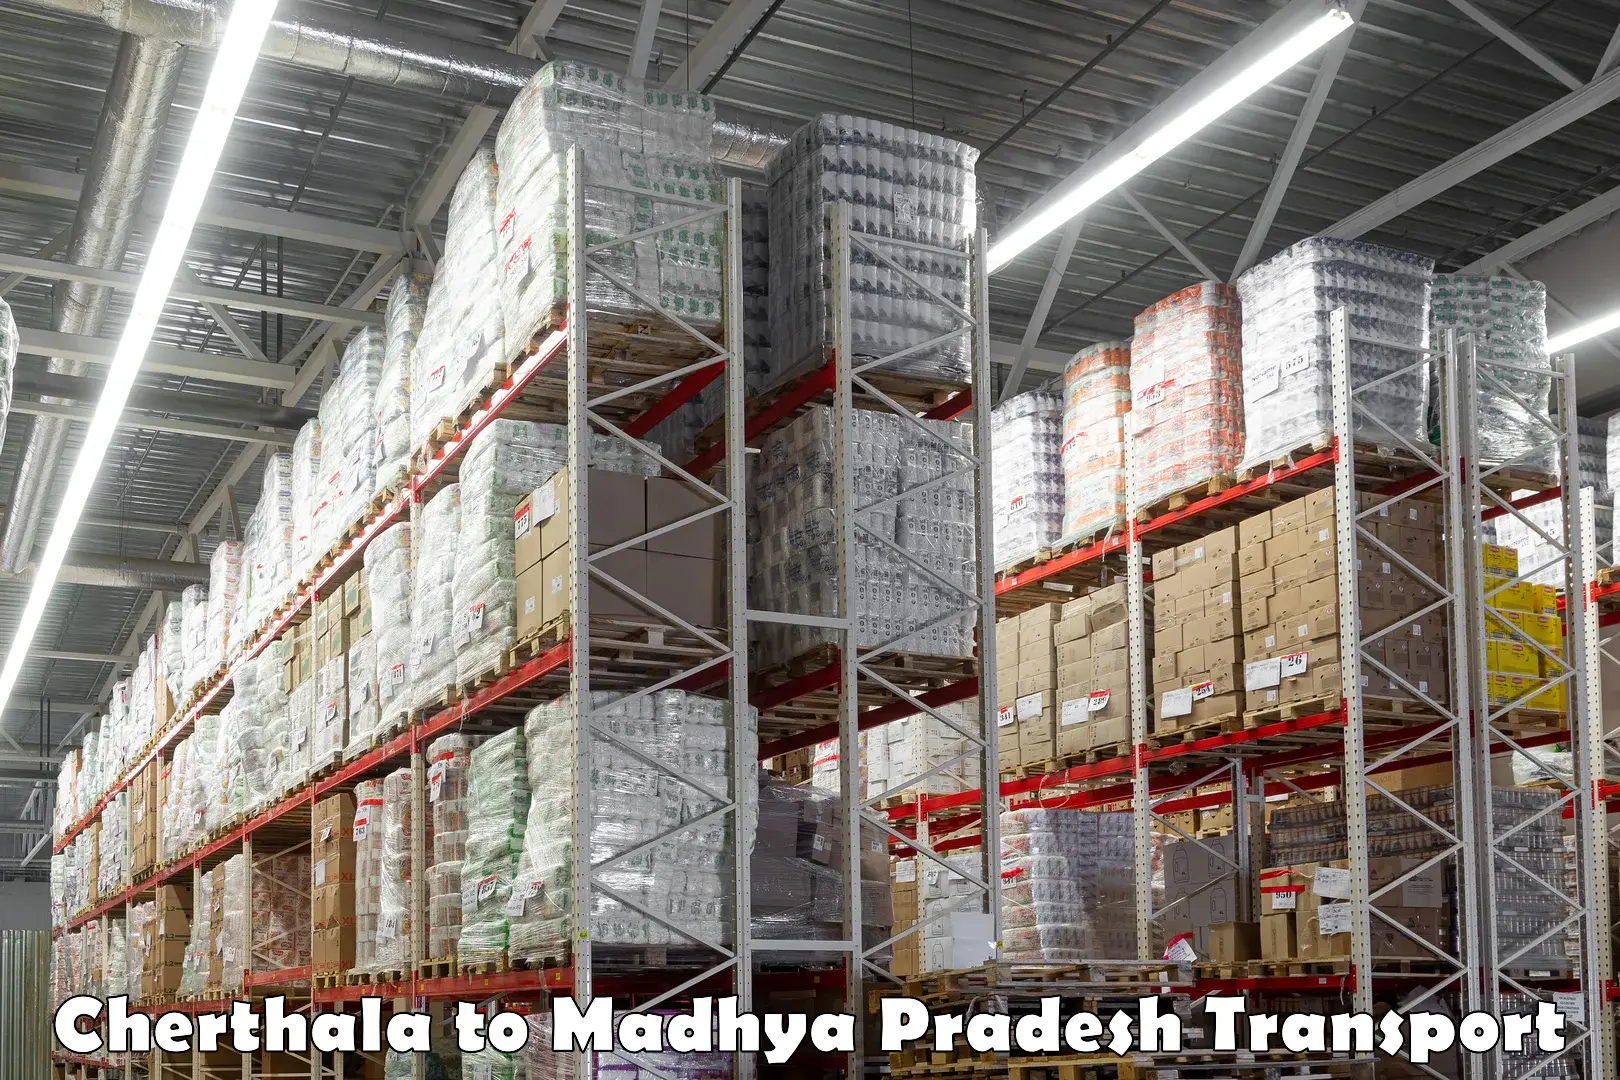 Land transport services in Cherthala to Madhya Pradesh